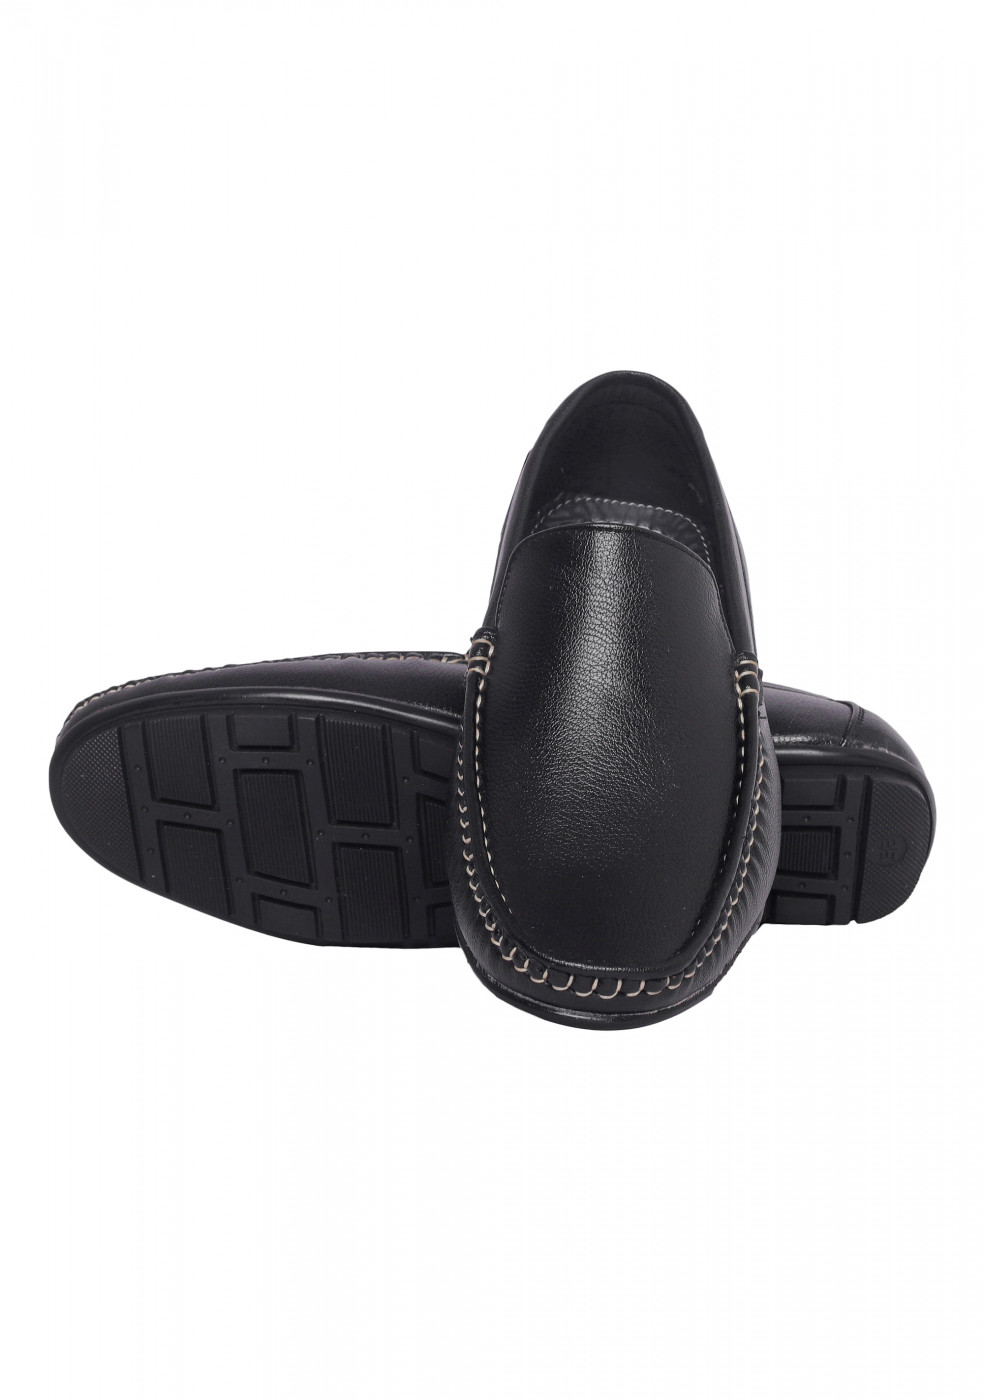 XSTOM Black Loafers For Men